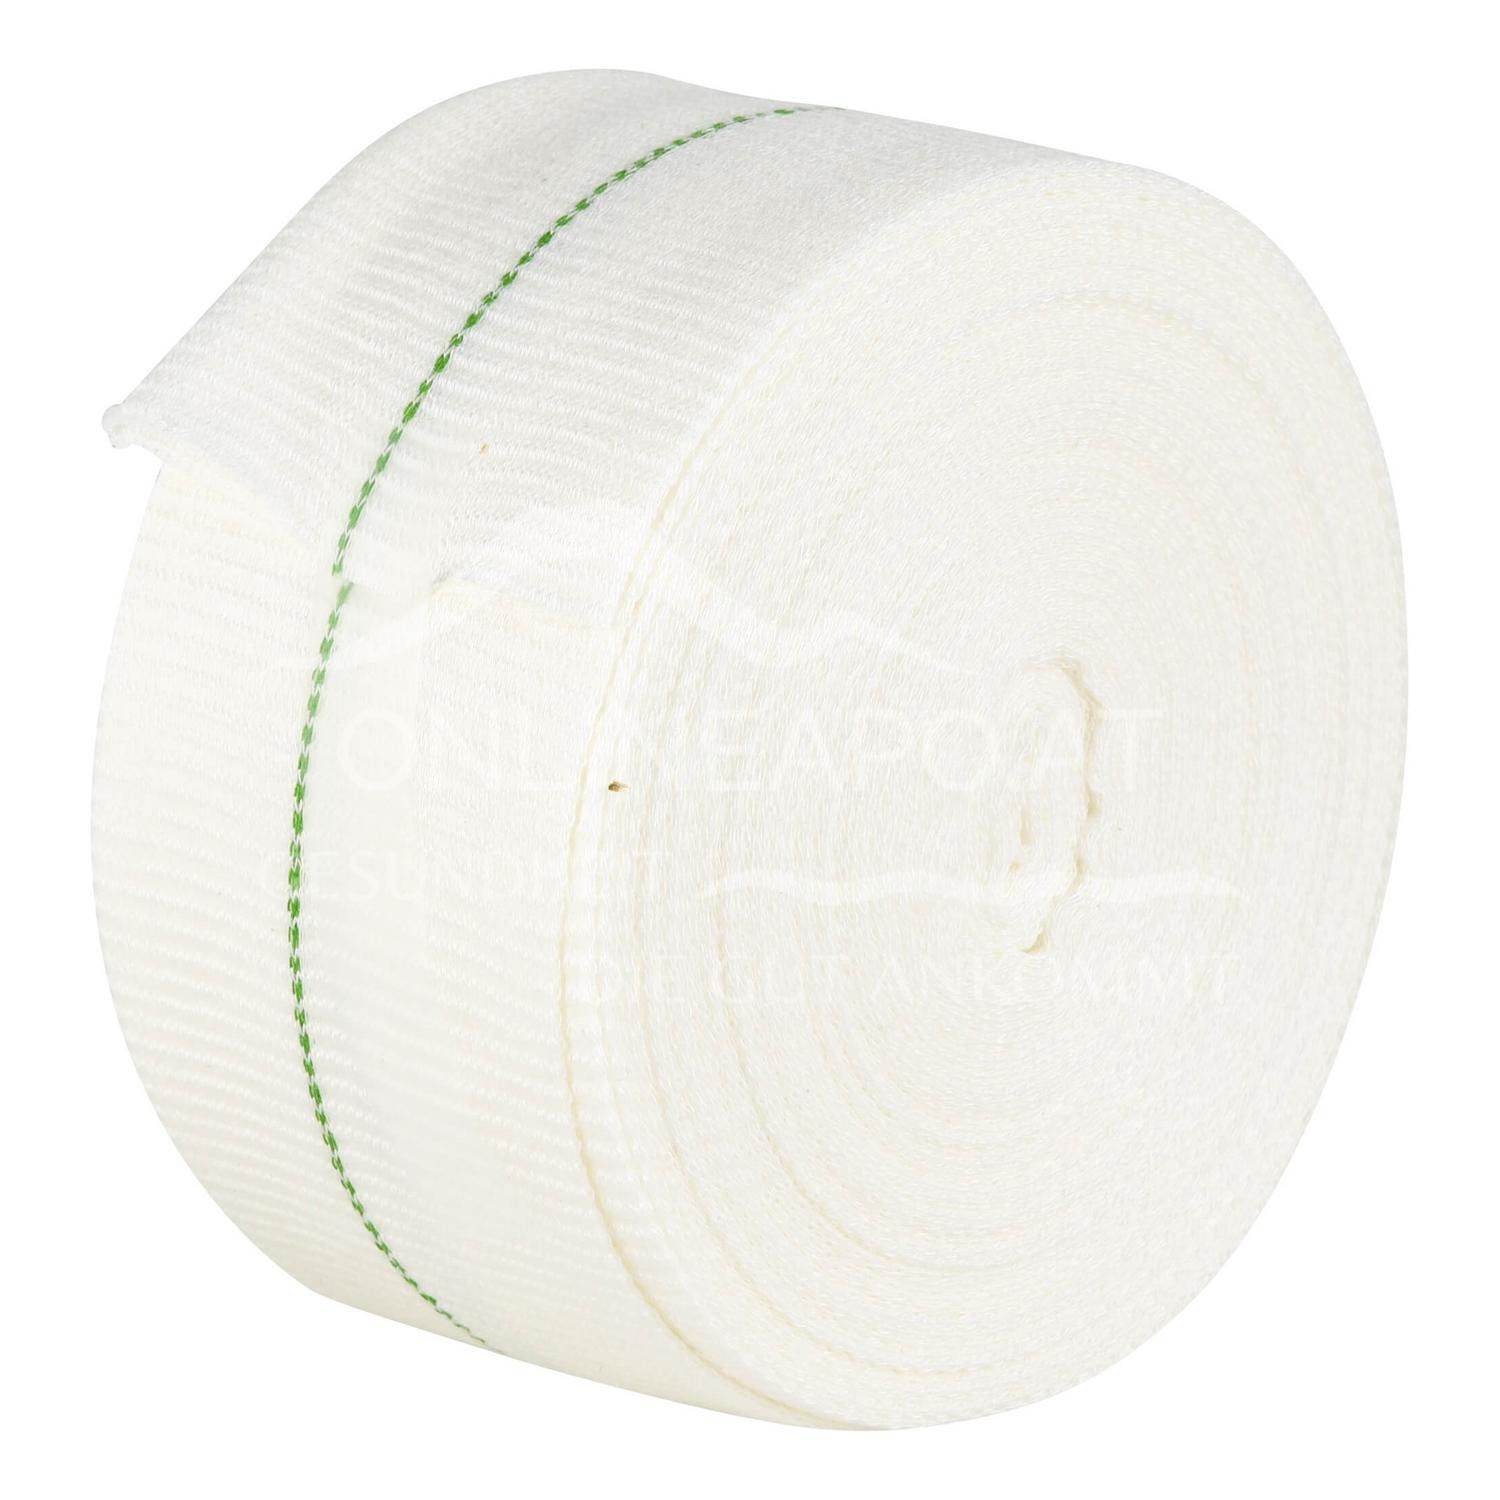 Tubifast® Schlauchverband mit Zwei-Wege-Stretch Rolle, Grün, 5 cm x 1 m